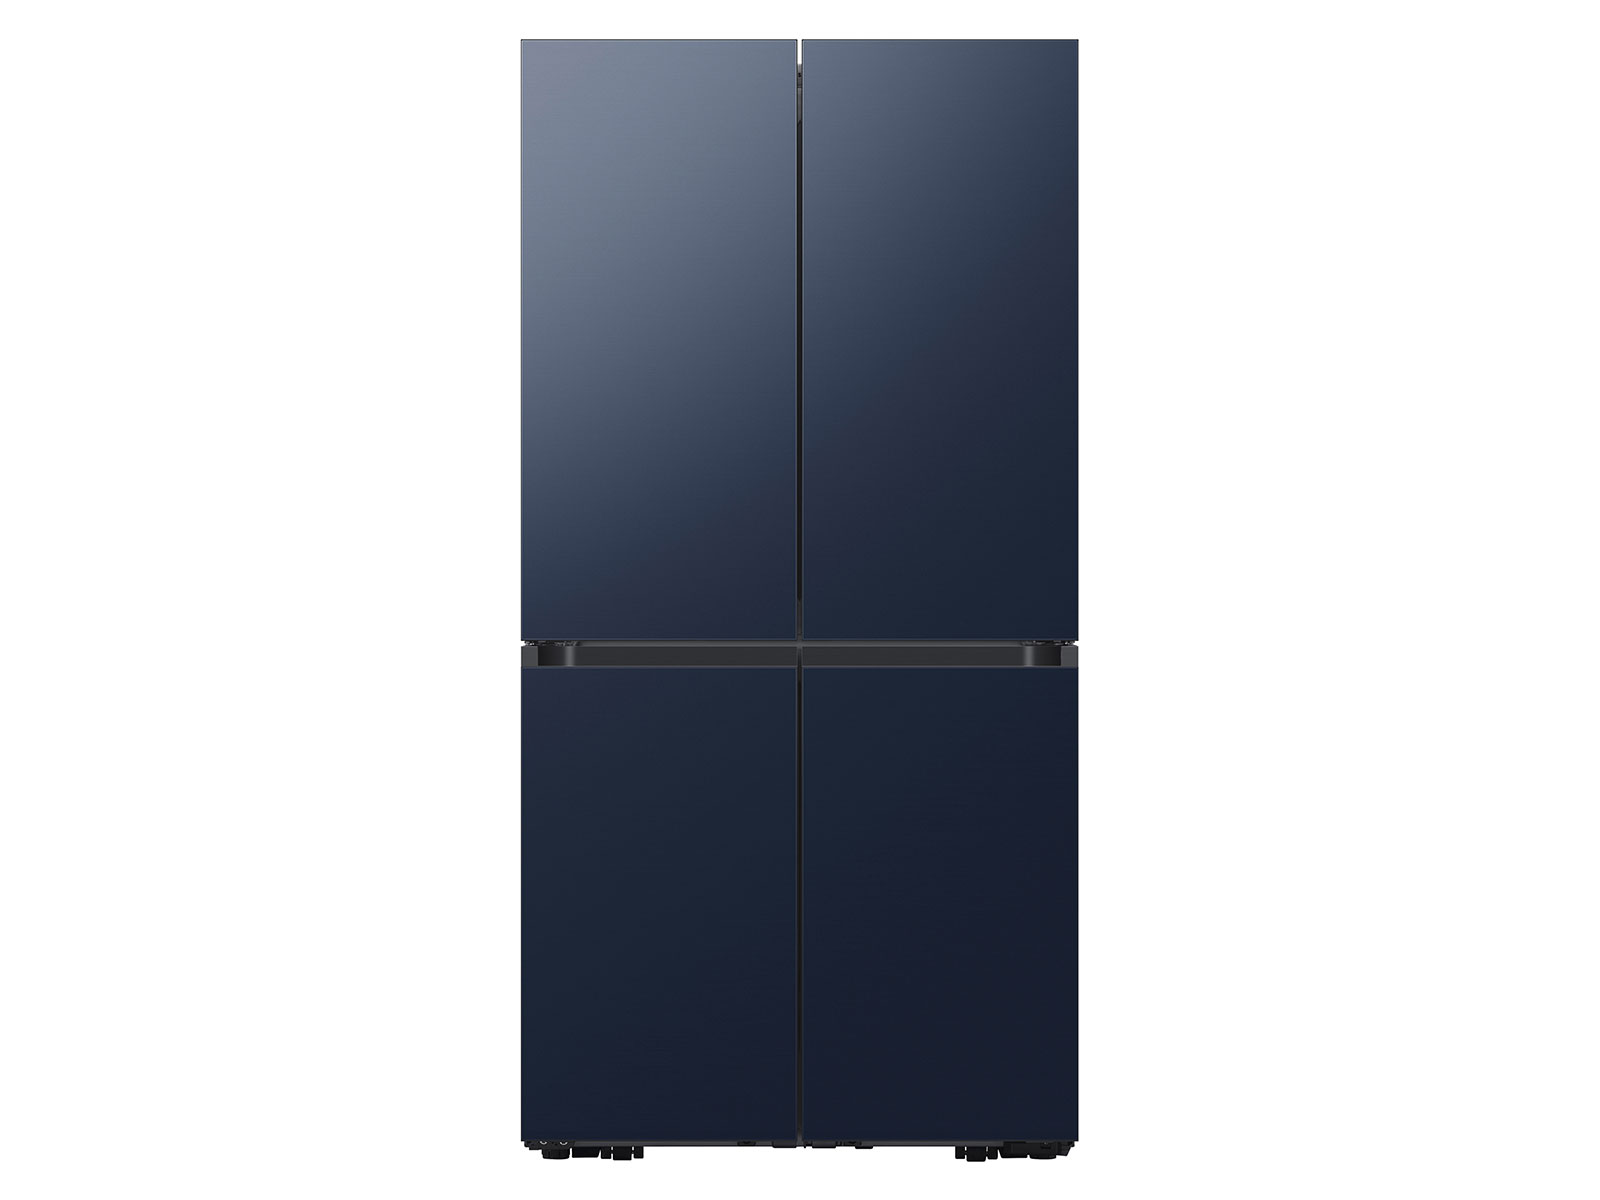 Samsung Bespoke Counter Depth 4-Door Flex™ Refrigerator in Navy Blue Steel (23 cu. ft.) in Navy Steel(BNDL-1616699068555)